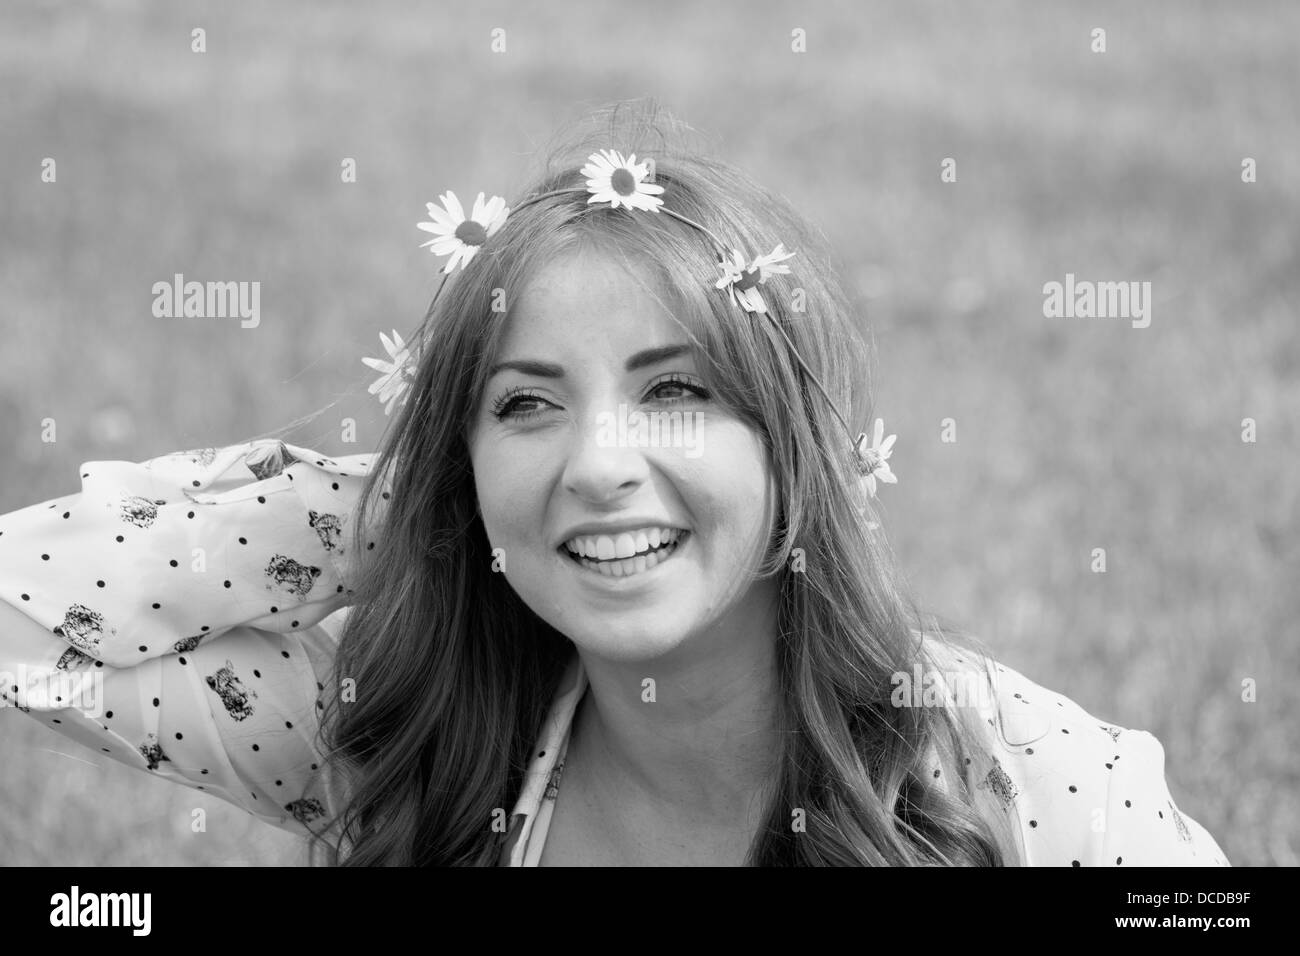 Orizzontale, immagine in bianco e nero di un felice, sorridente giovane donna con una catena a margherita nei suoi capelli Foto Stock